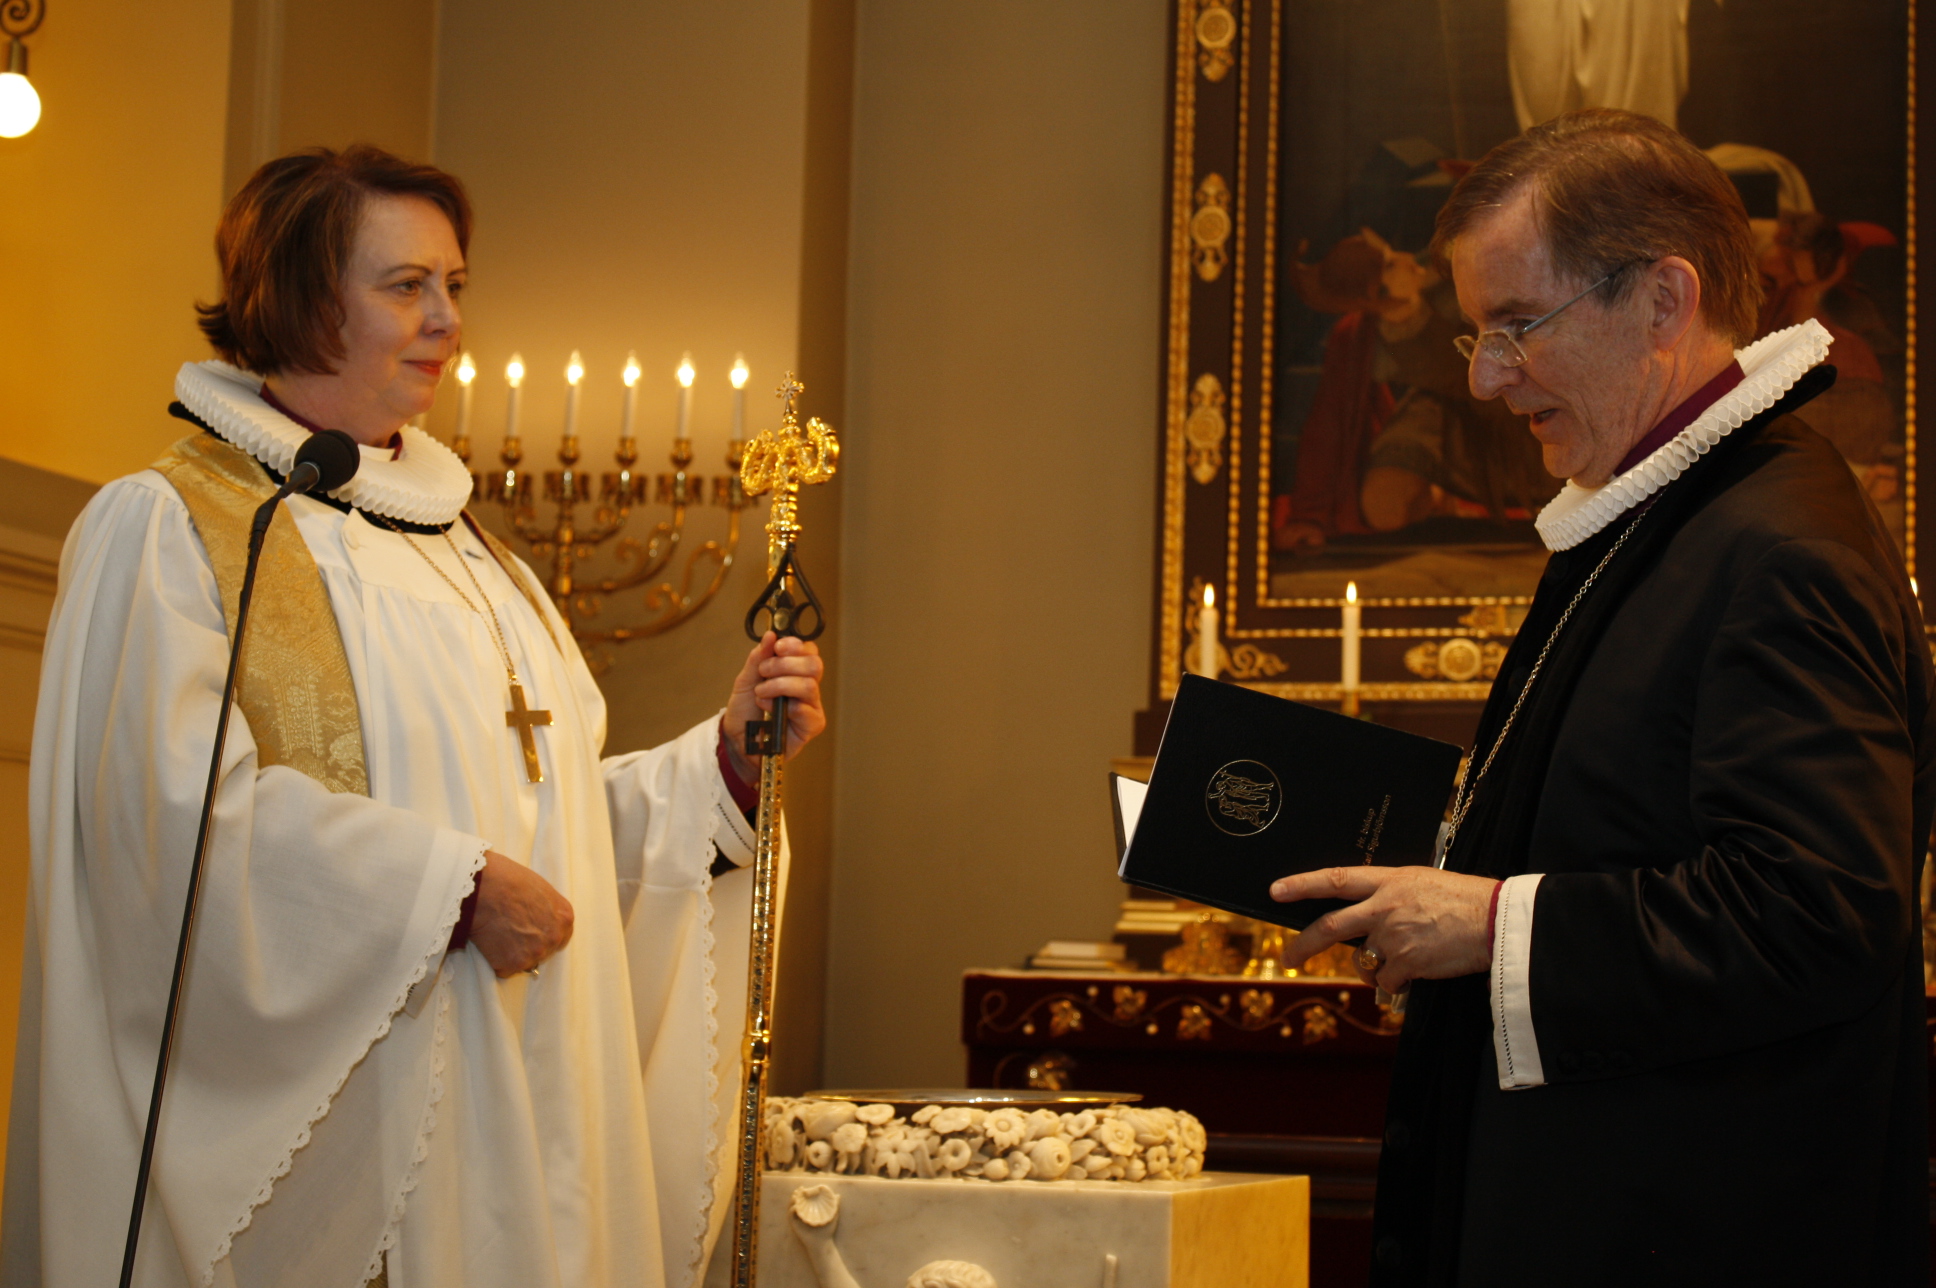 Agnes M. Sigurðardóttir, nýr biskup Íslands, tekur við biskupsstaf og lyklum hjá Karli Sigurbjörnssyni biskupi sem lætur nú af embætti.